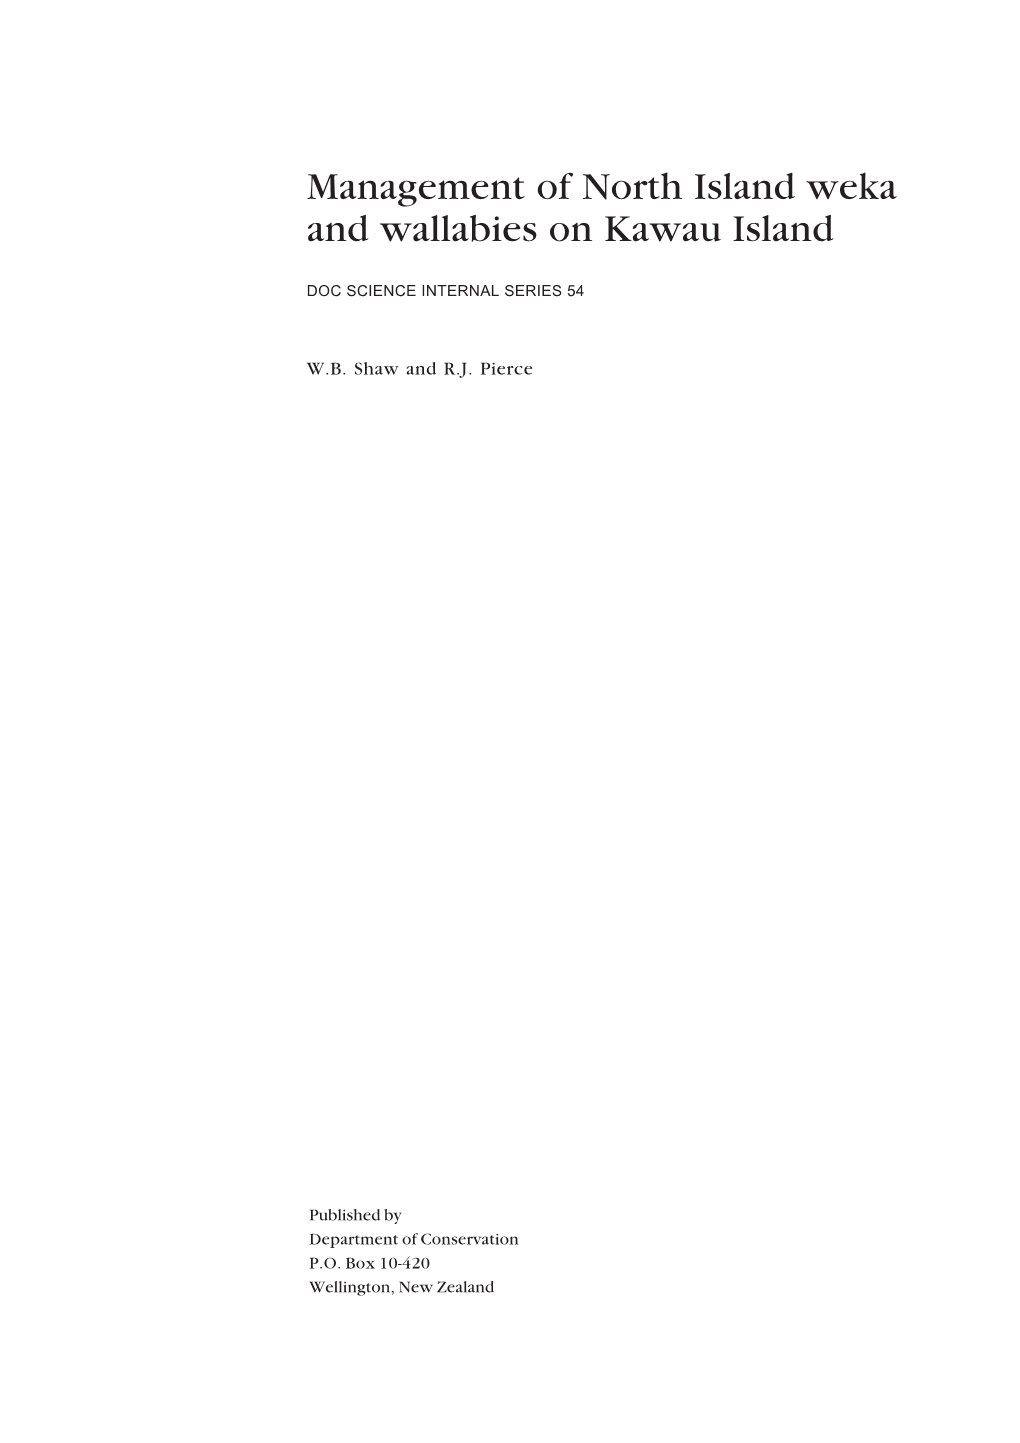 Management of North Island Weka and Wallabies on Kawau Island